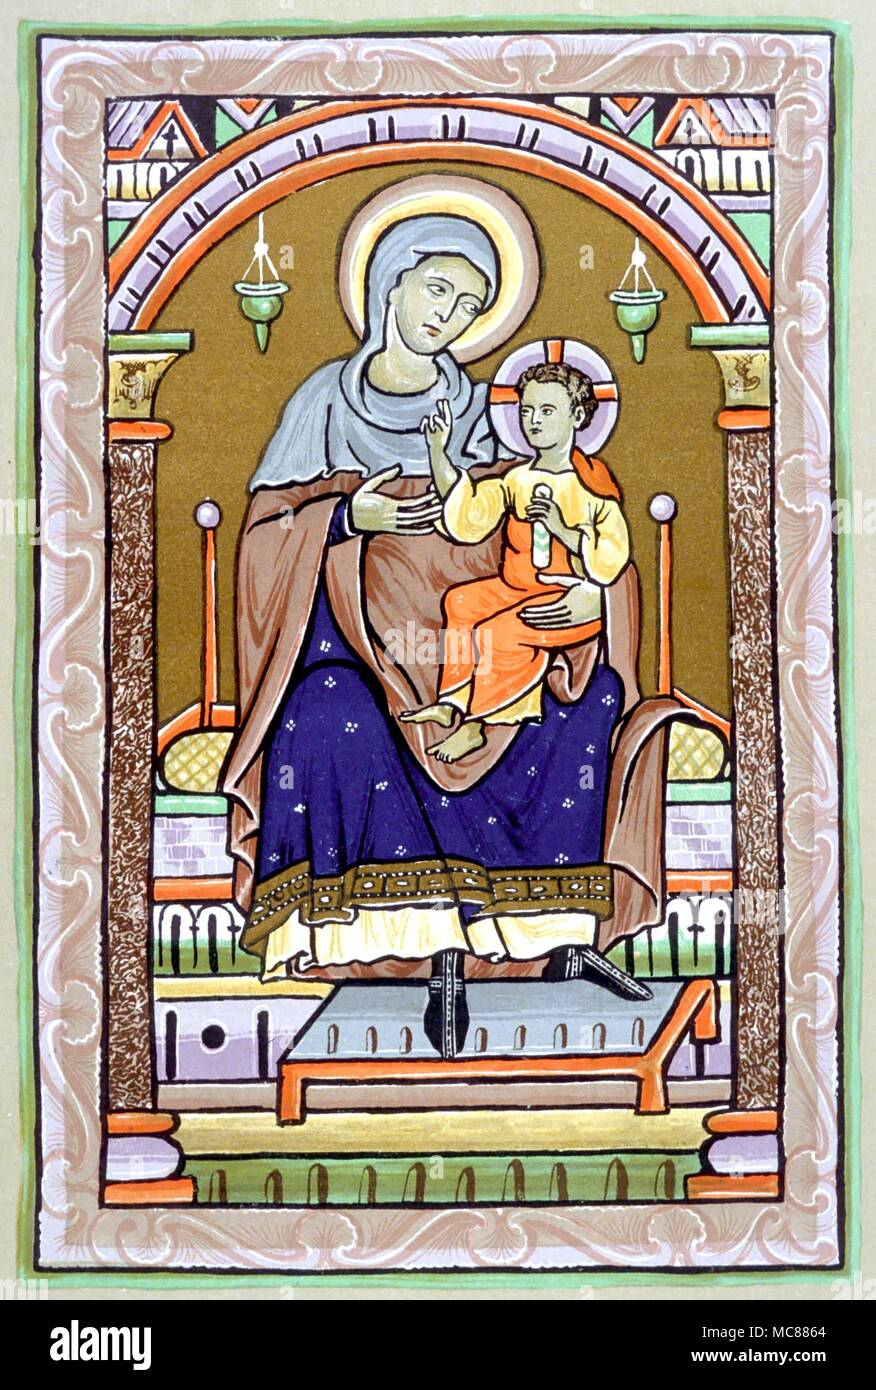 Christian 13. Jahrhundert Beleuchtung der Jungfrau mit dem Kind. 19. Jahrhundert lithographischen Kopie der British Library Manuskript Royal 2A XXII. Stockfoto